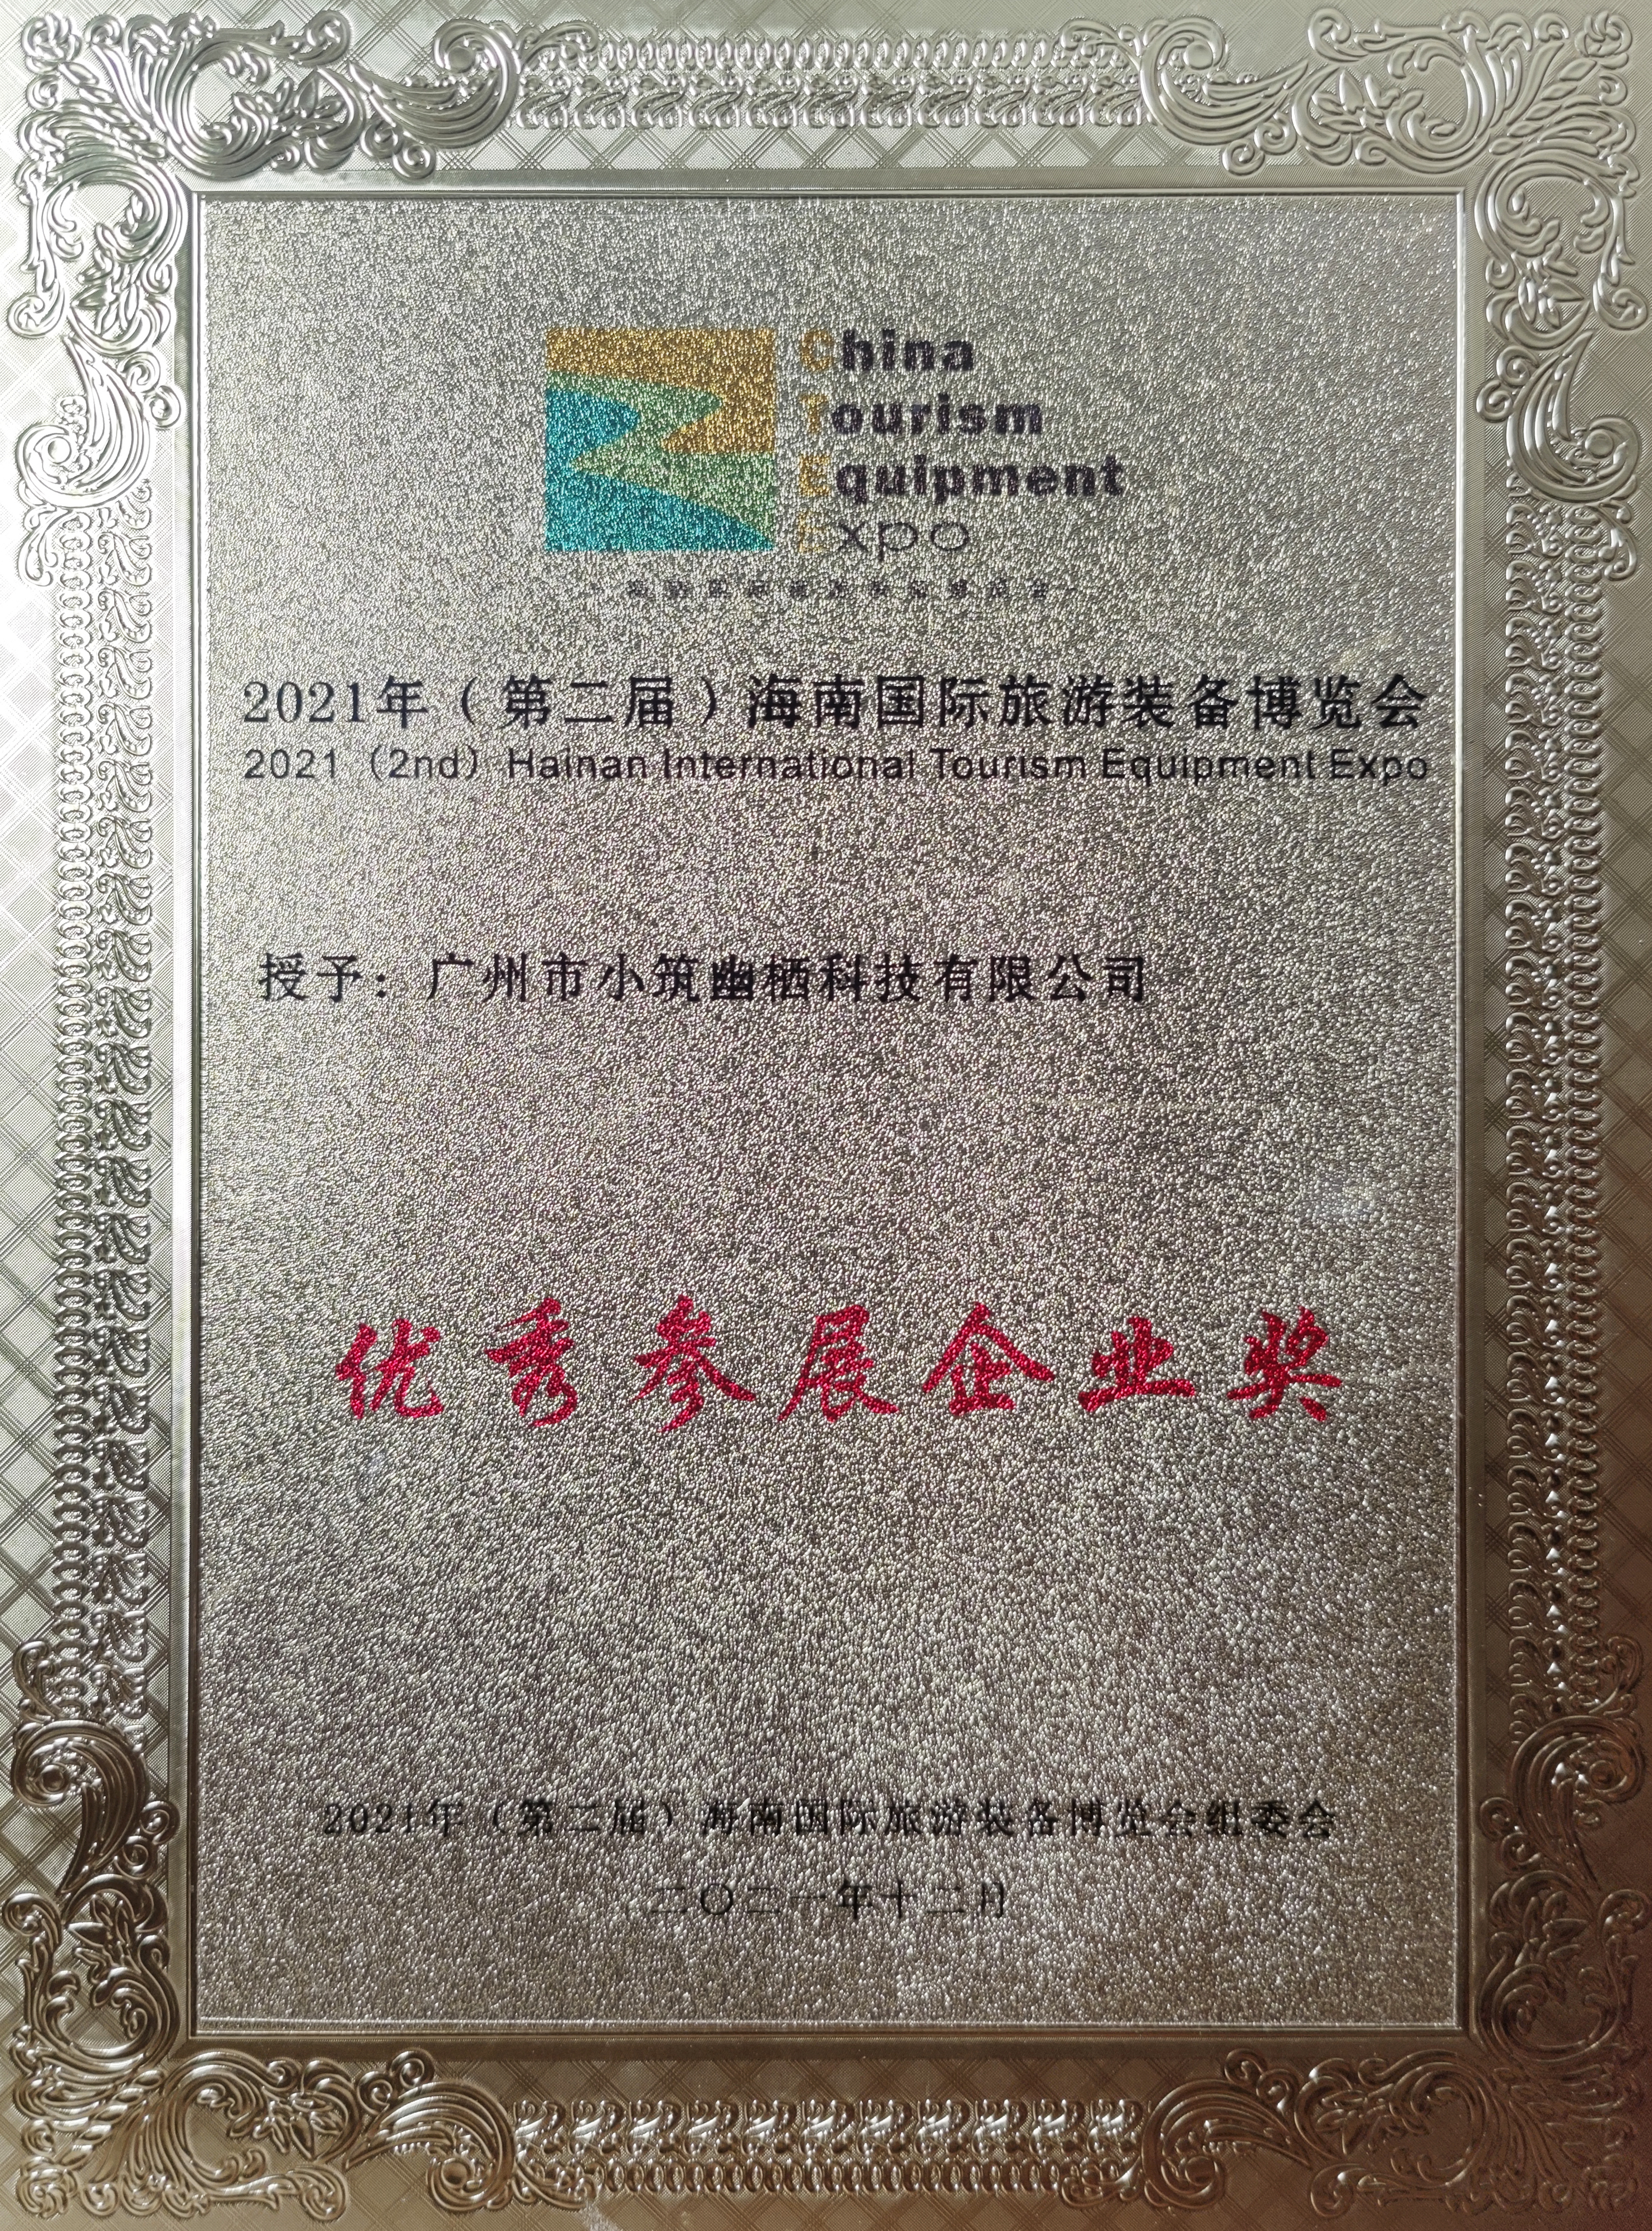 certificado de honra (1)